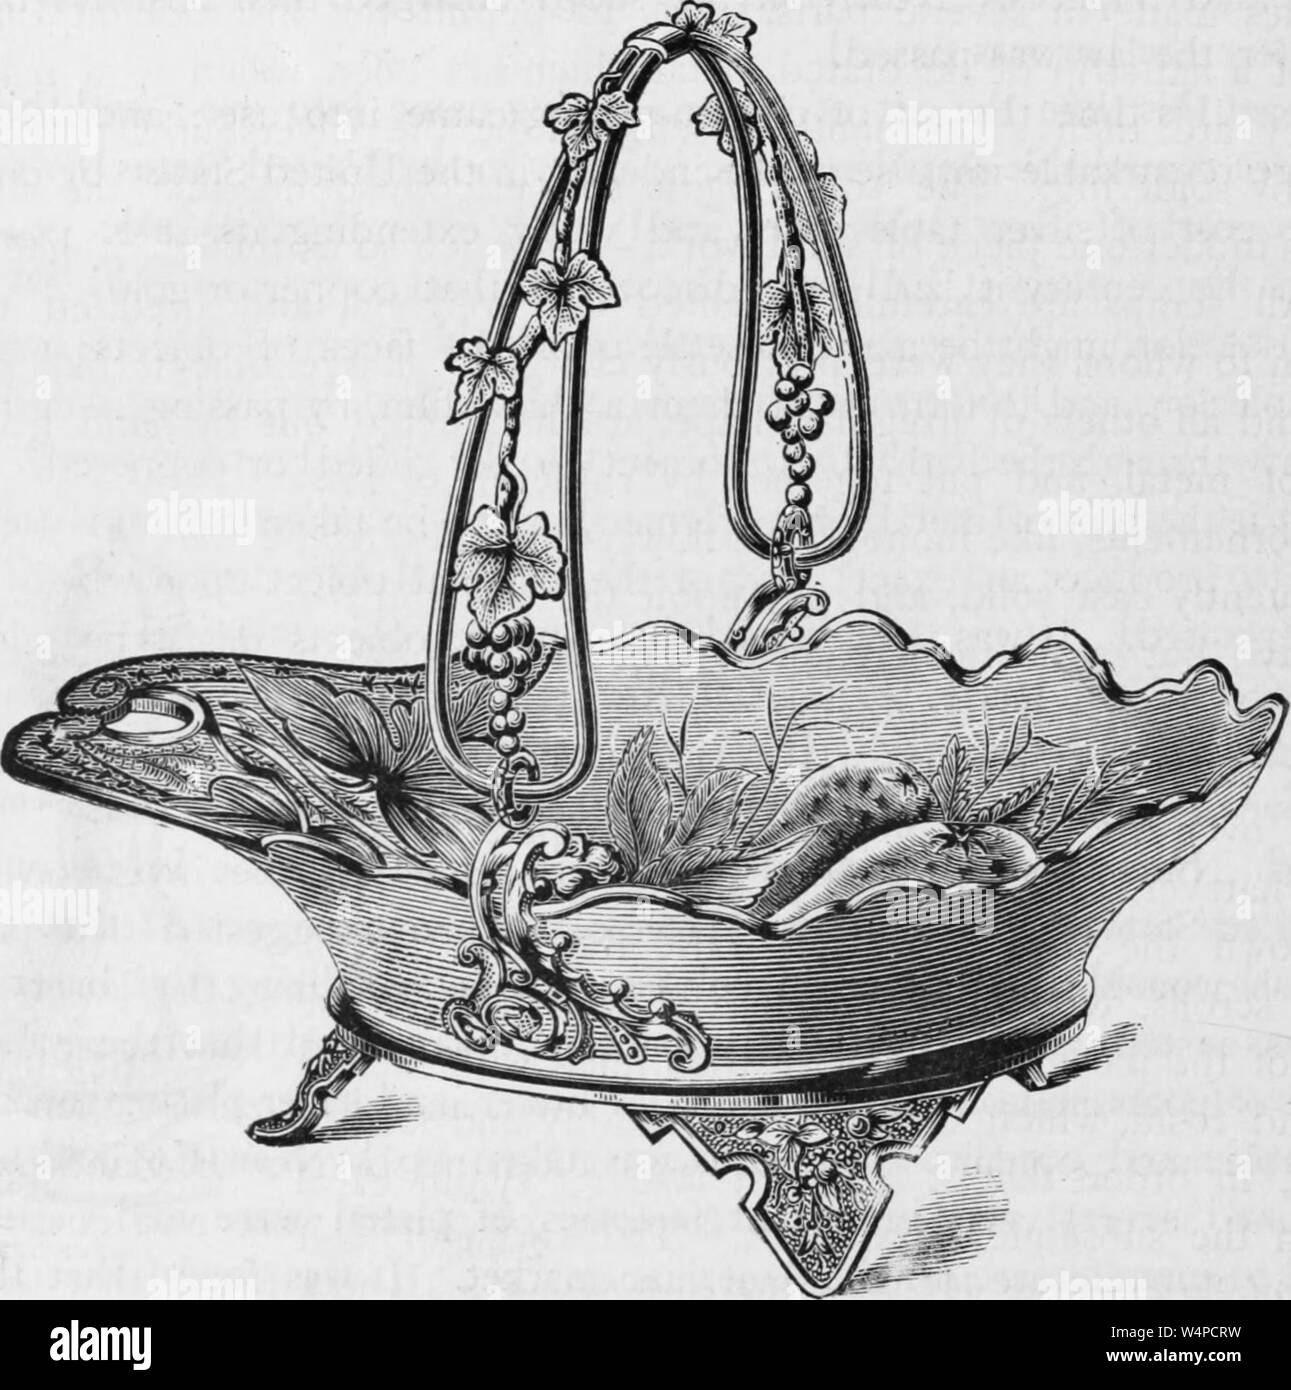 Grabado el dibujo de la torta de plata canasta, del libro 'La historia industrial de los Estados Unidos' de Albert Sidney Bolles, 1878. Cortesía de Internet Archive. () Foto de stock